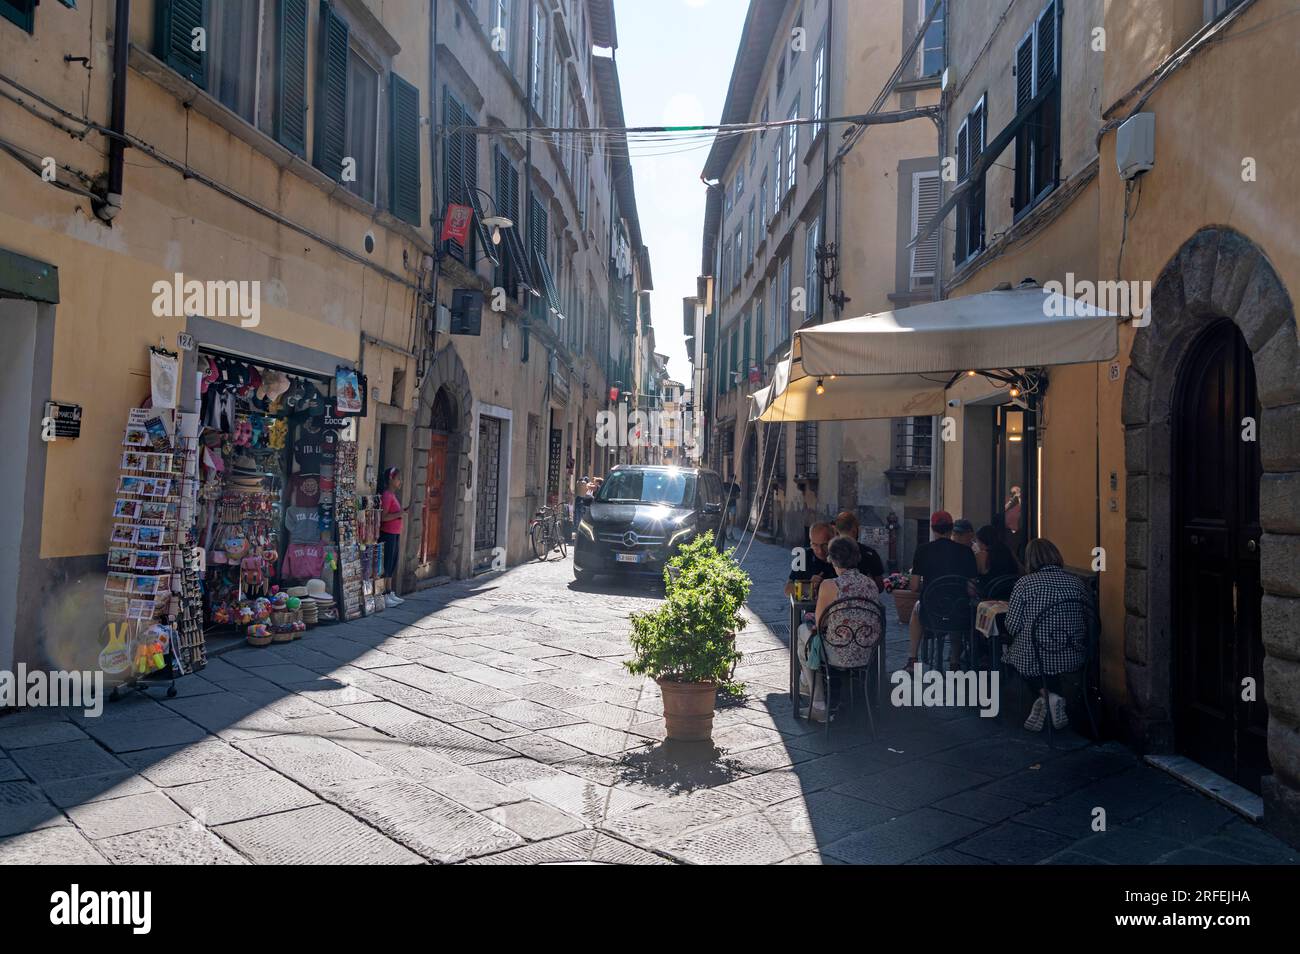 Ein Auto, das durch eine mittelalterliche, enge Kopfsteinpflasterstraße fährt, die in der Regel von Touristen in der Stadt Lucca in der Toskana Italiens gefüllt ist. Stockfoto